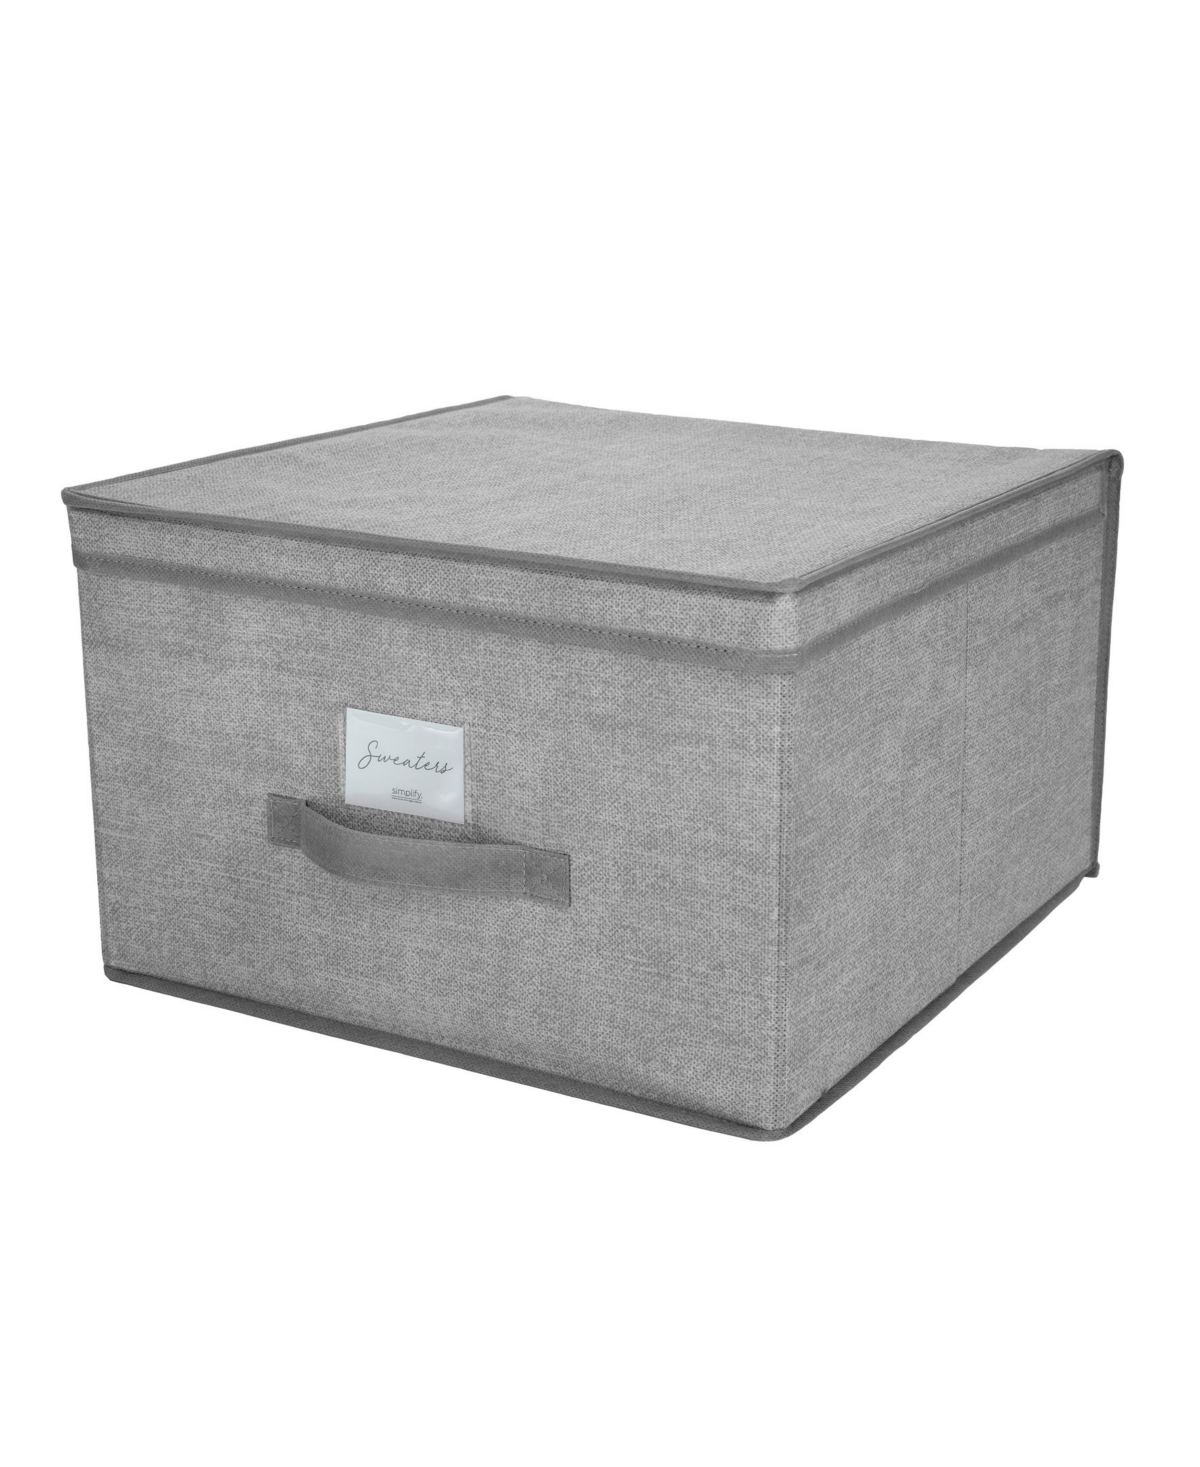 Jumbo Storage Box - Gray